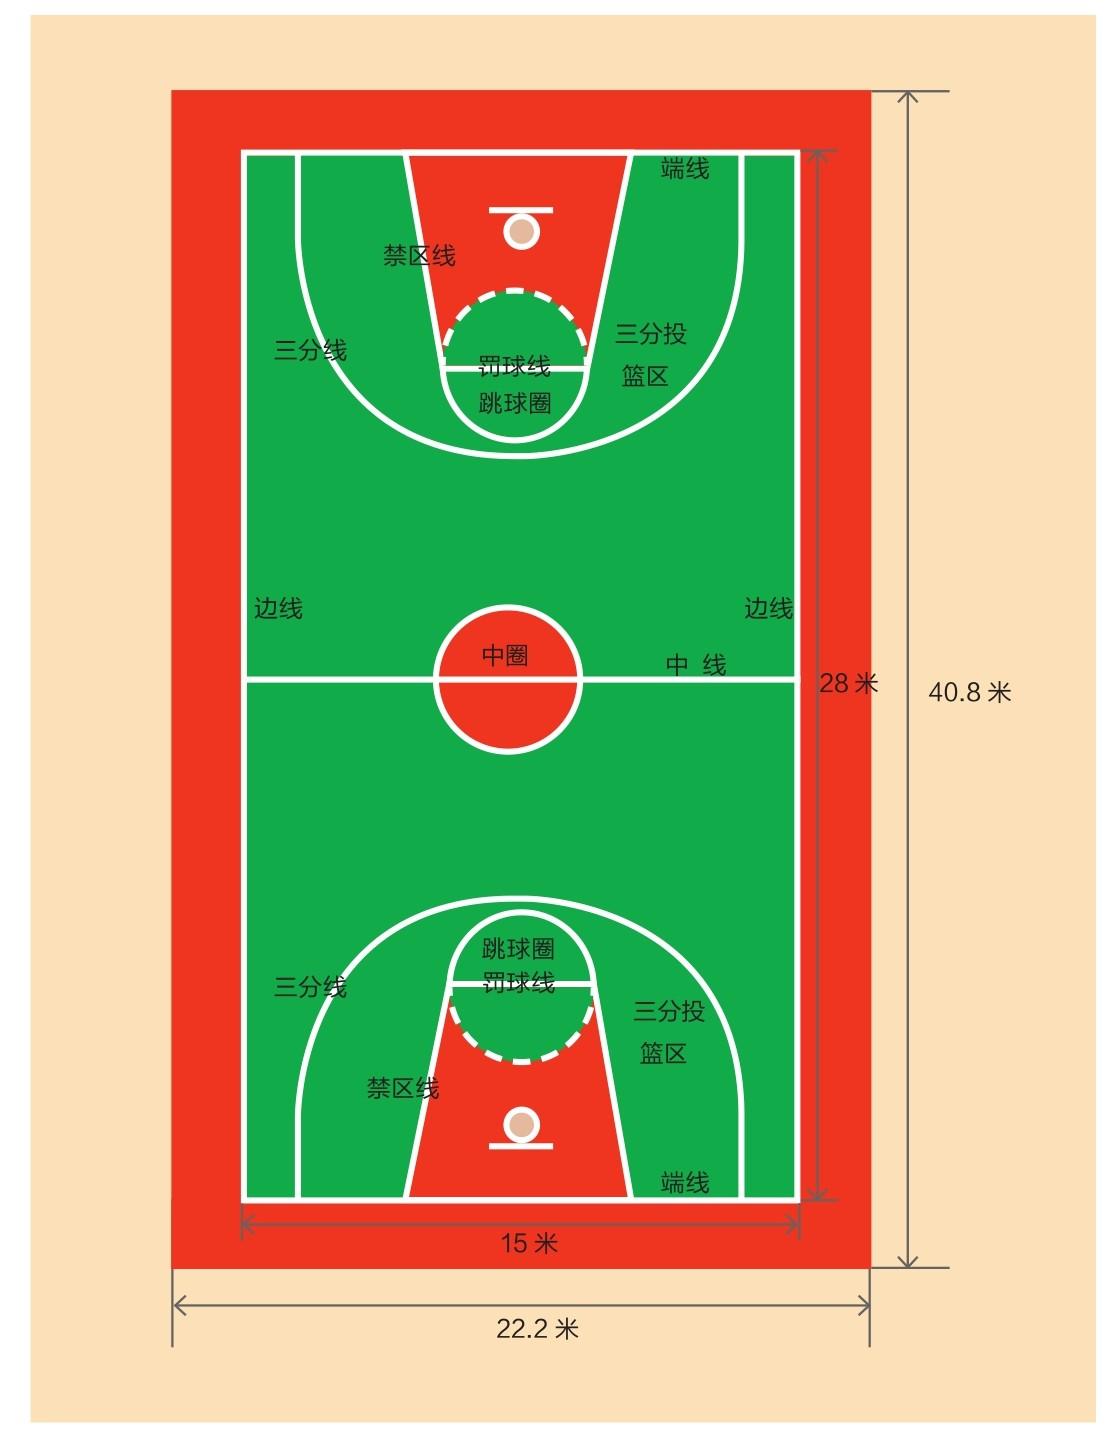 奥运会篮球比赛和世界篮球锦标赛的比赛场地长度为28米,宽15米;其他